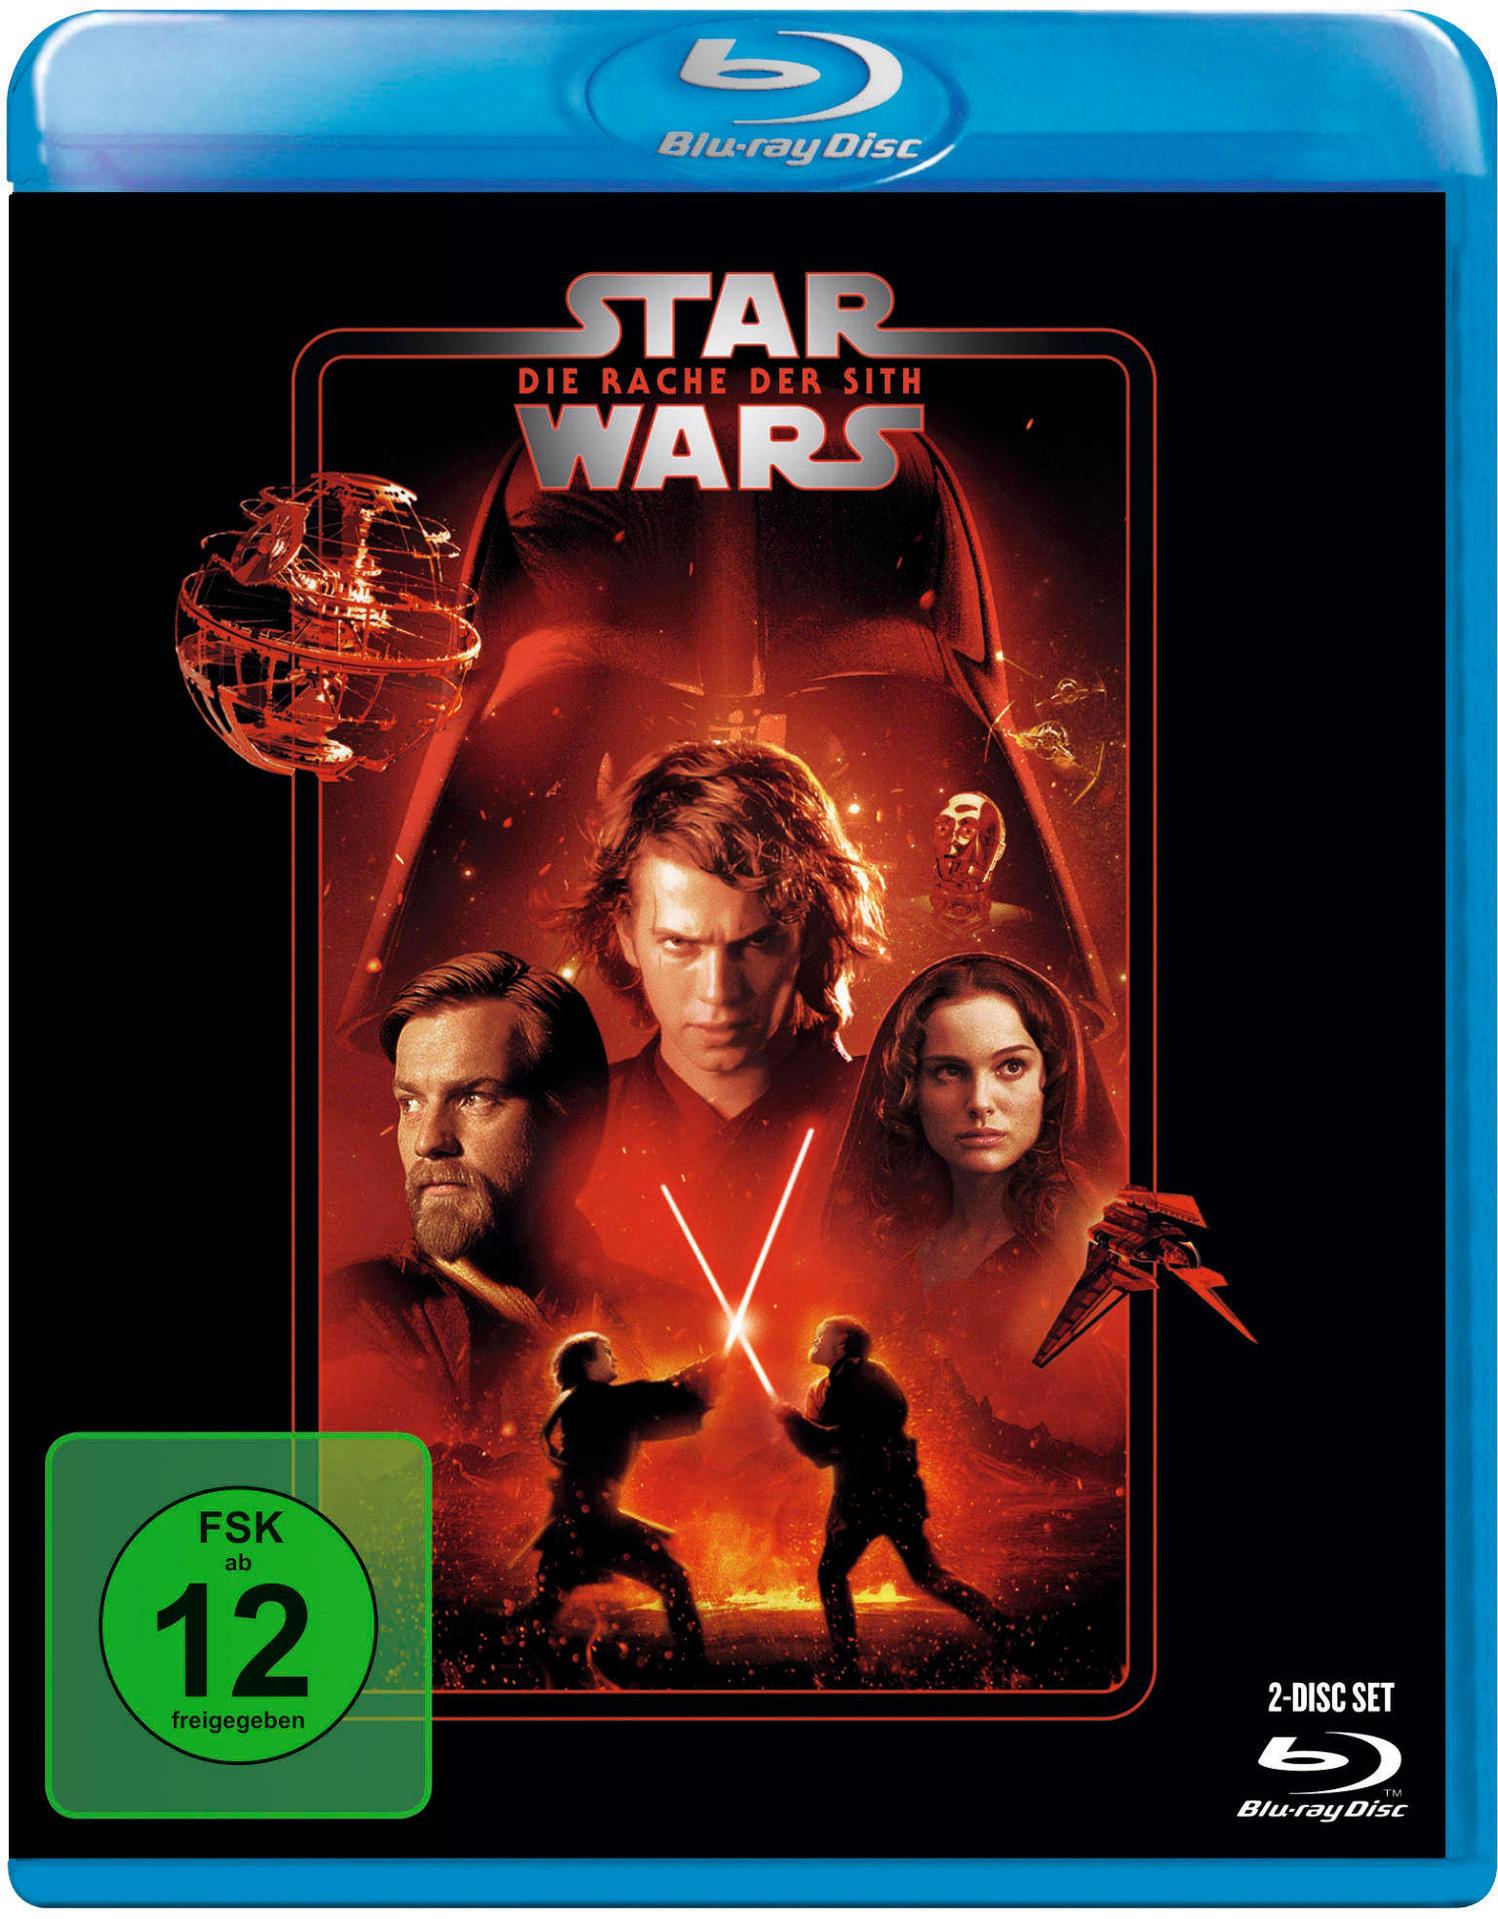 Rache der Blu-ray - III Sith Wars: Die Episode Star